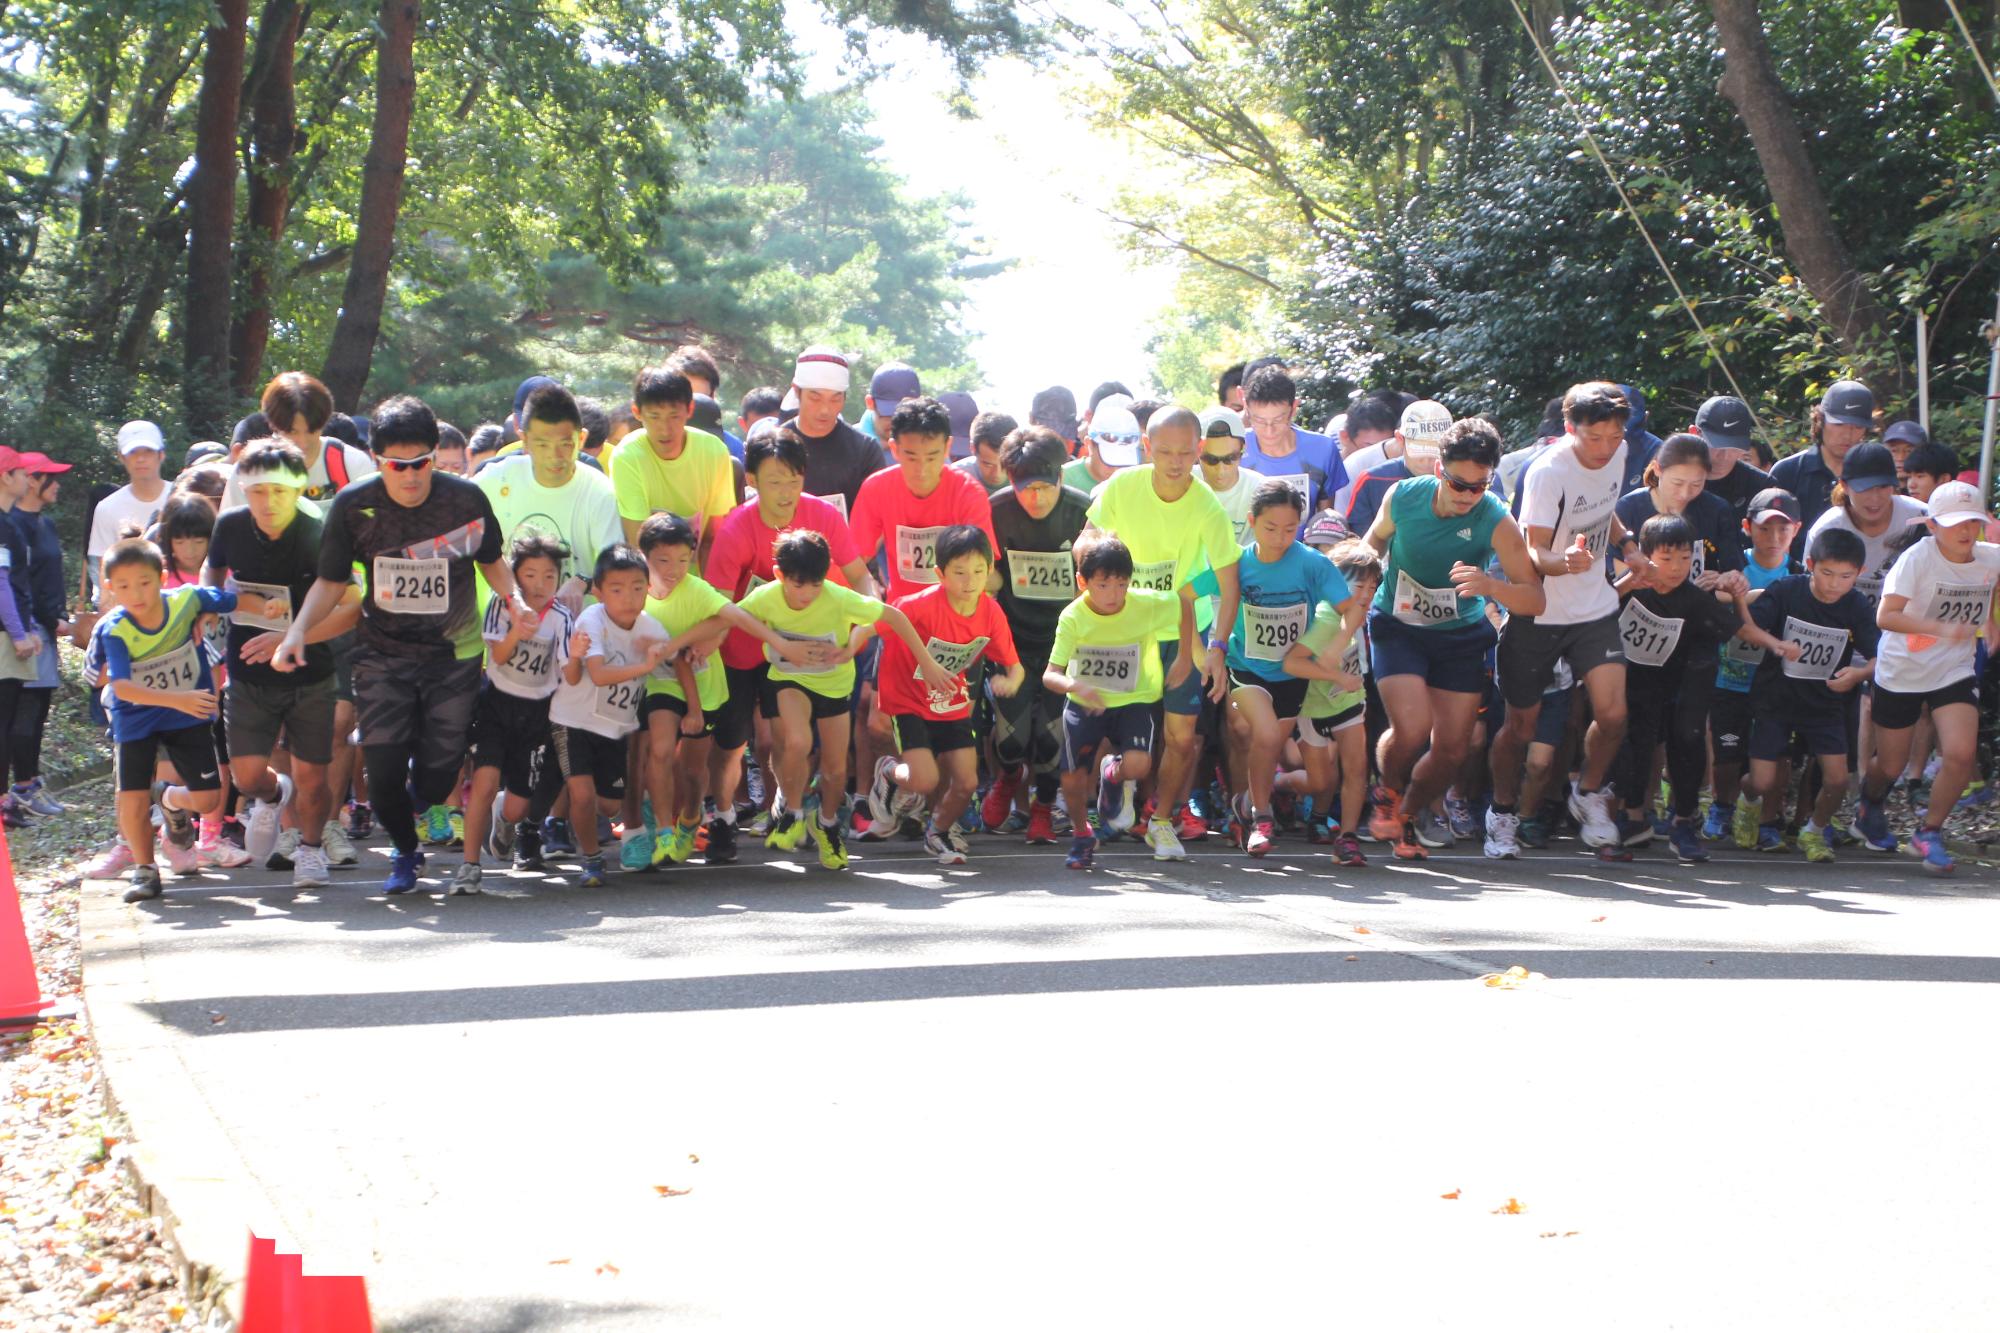 井頭公園で子供や大人たちが一斉に走り始めたマラソン大会の様子の写真